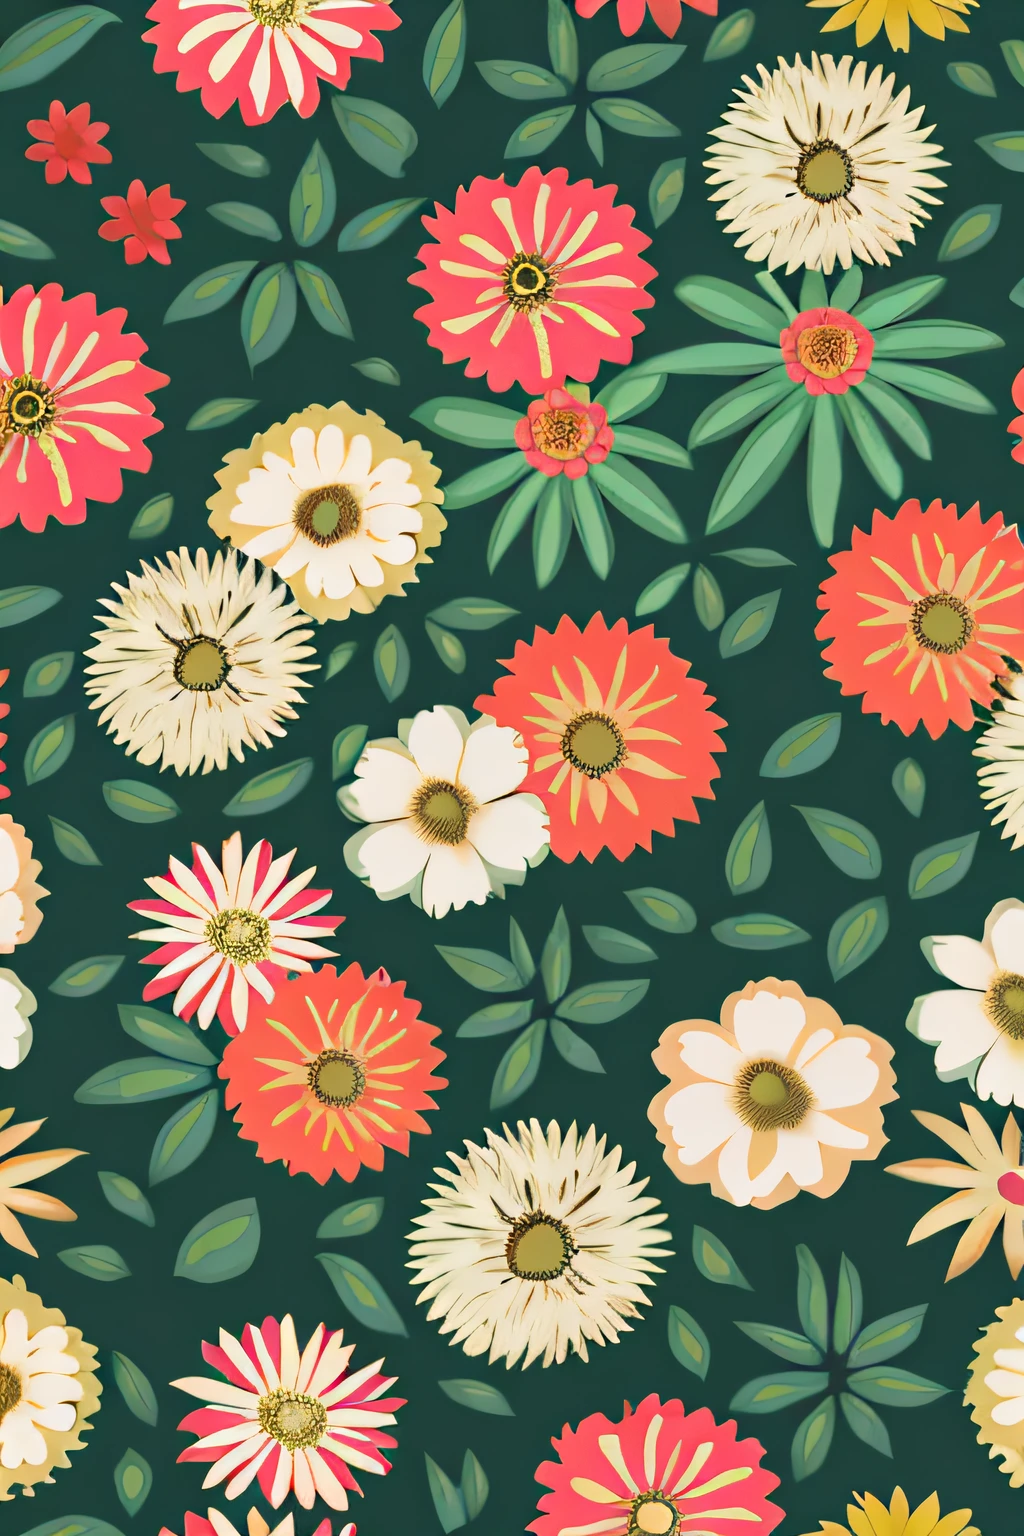 꽃무늬 벽지, 벽지 디자인, 꽃무늬, 식물 패턴, 갈색 꽃, 식물 배경, 원활한 패턴 디자인, 꽃무늬, 섬세한 패턴의, 정원 꽃 패턴, 갈색 꽃이 가득한 배경, 복잡한 패턴, 보호 꽃 덩굴, 식물 성분, 아늑한 미학을 위해 디자인된!, 디지털 아트 - W 700, 벽지 패턴，티셔츠 디자인，rzmin여행，벡터 아트，루프 디자인